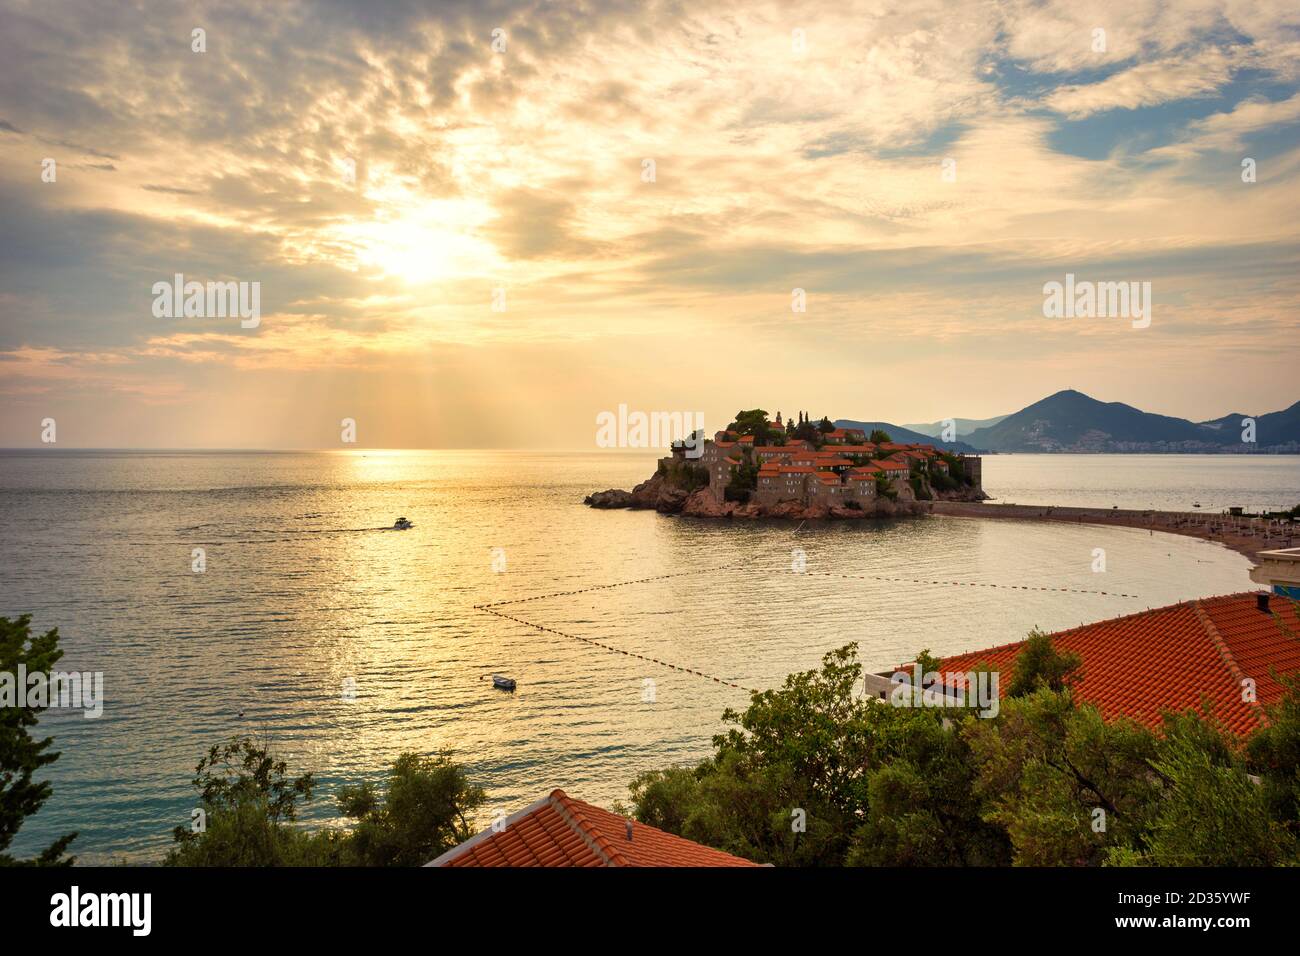 Magnifique coucher de soleil sur la plage de luxe et l'îlot Sveti Stefan près de Budva au Monténégro (mer Adriatique), en Europe. Concept de voyage, arrière-plan. Banque D'Images